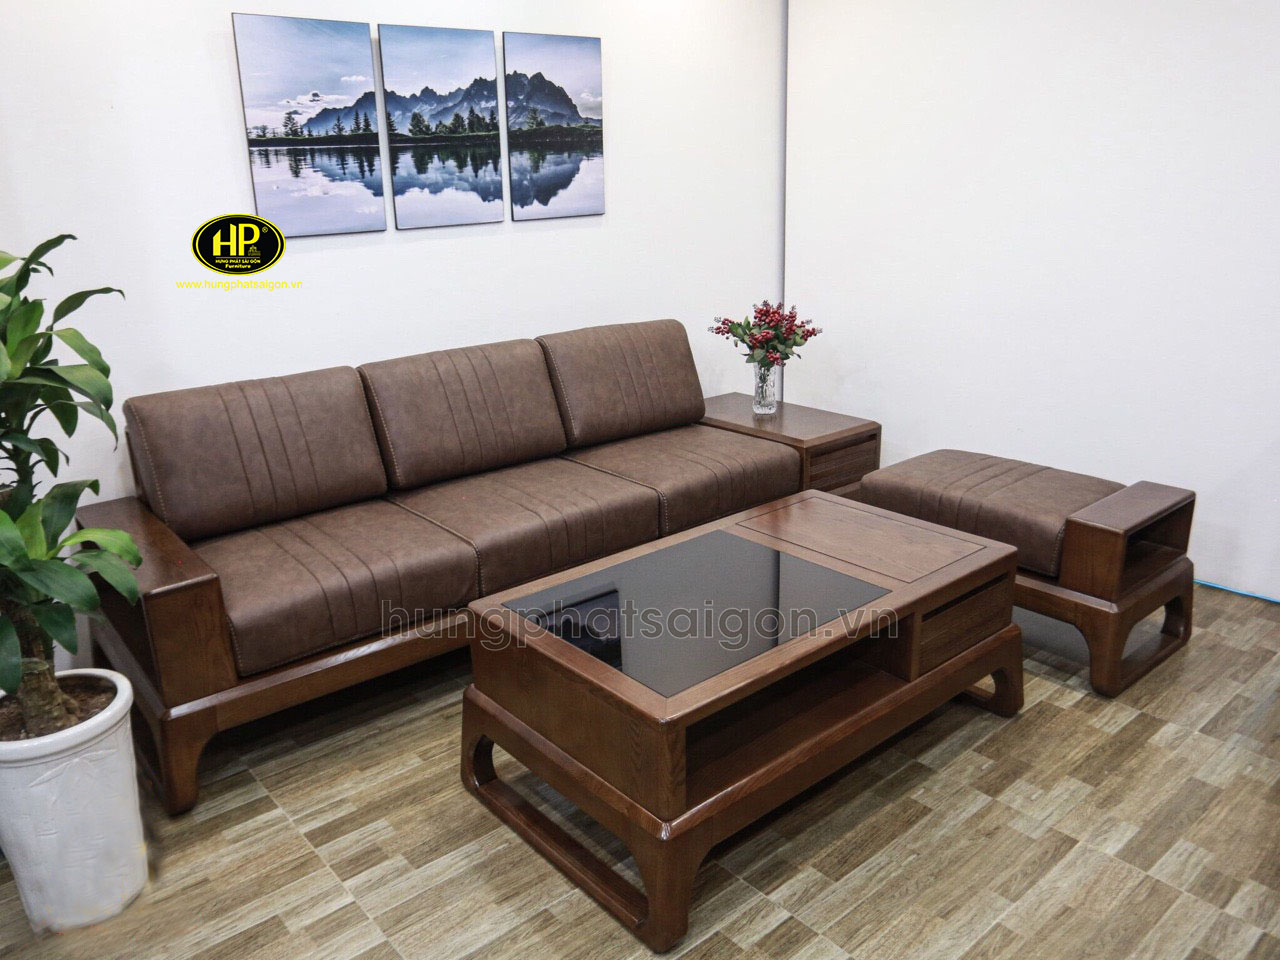 Ghế sofa gỗ sồi Nga mẫu mới nhất HS-23 